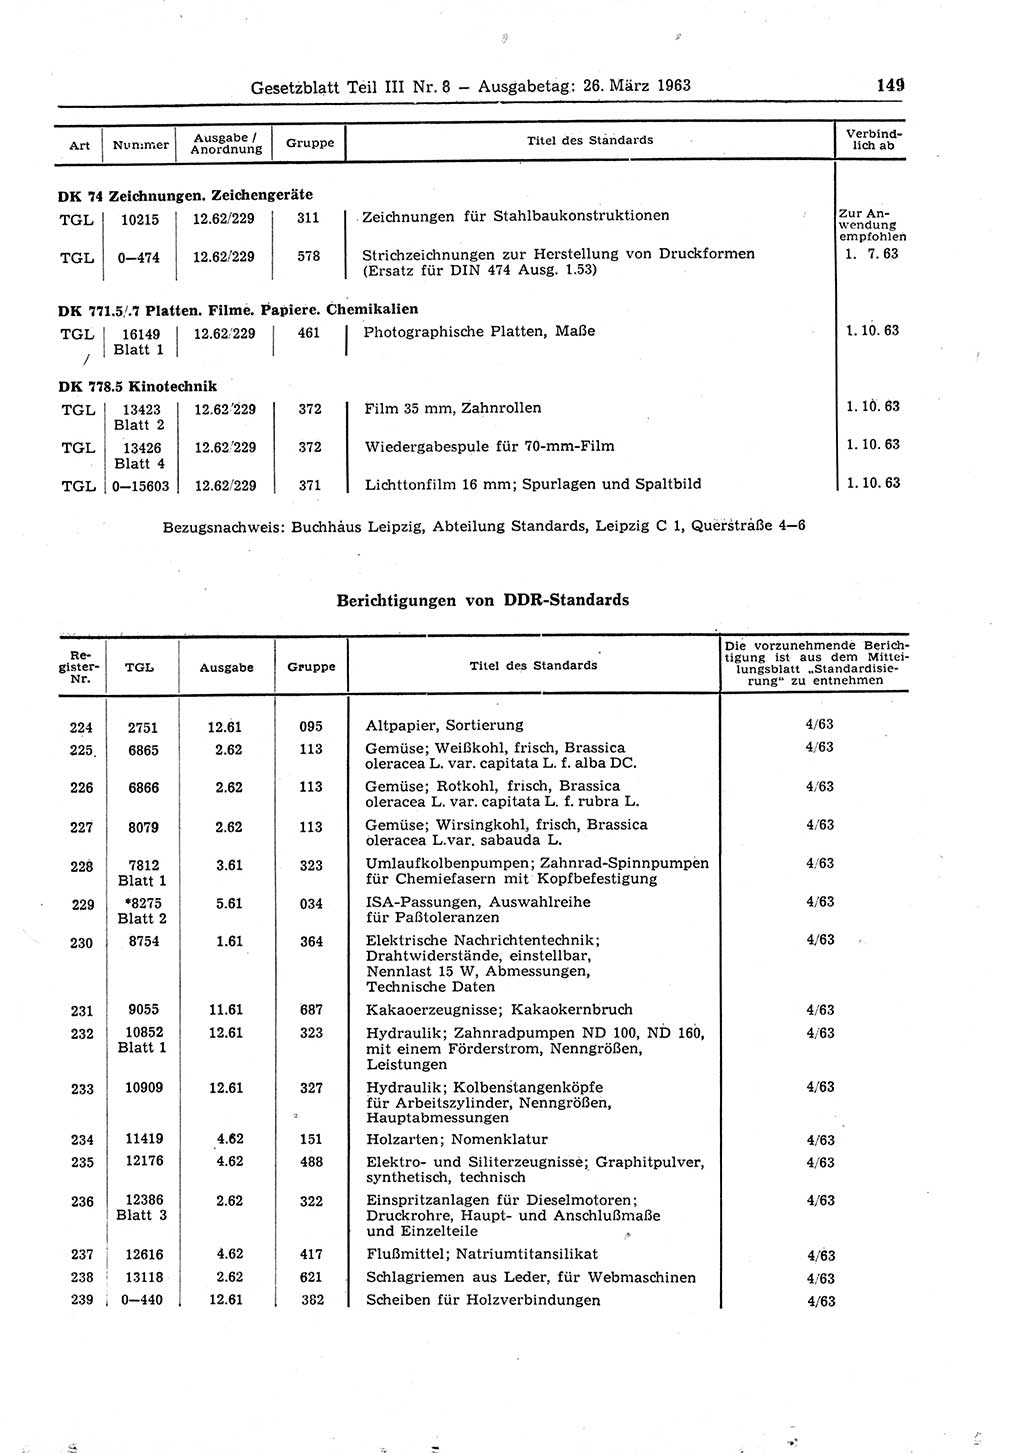 Gesetzblatt (GBl.) der Deutschen Demokratischen Republik (DDR) Teil ⅠⅠⅠ 1963, Seite 149 (GBl. DDR ⅠⅠⅠ 1963, S. 149)